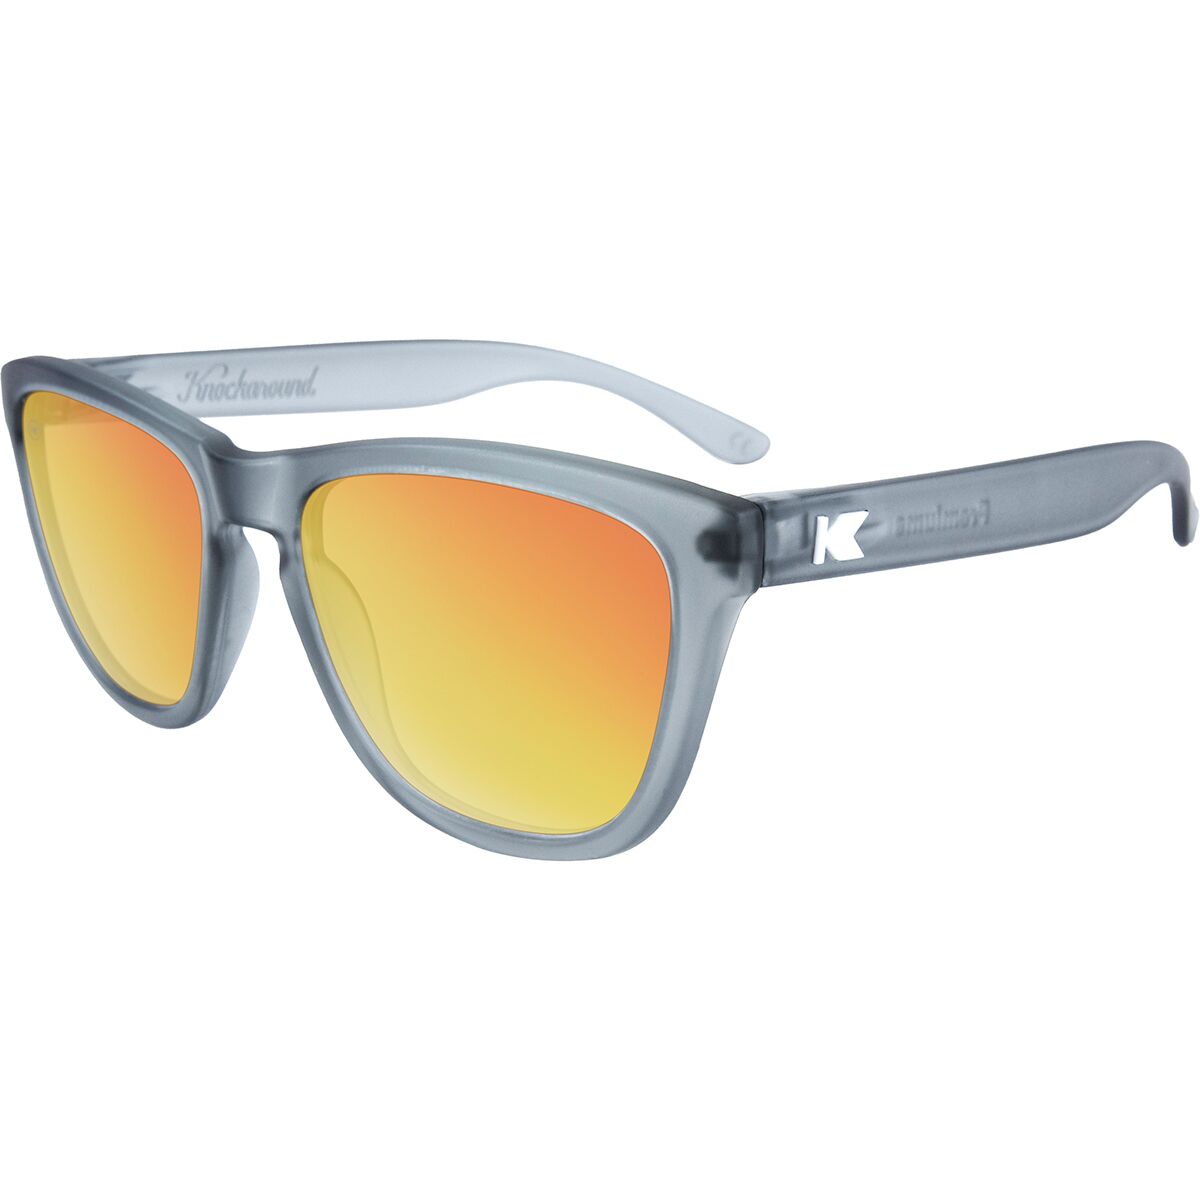 Knockaround Premiums Polarized Sunglasses